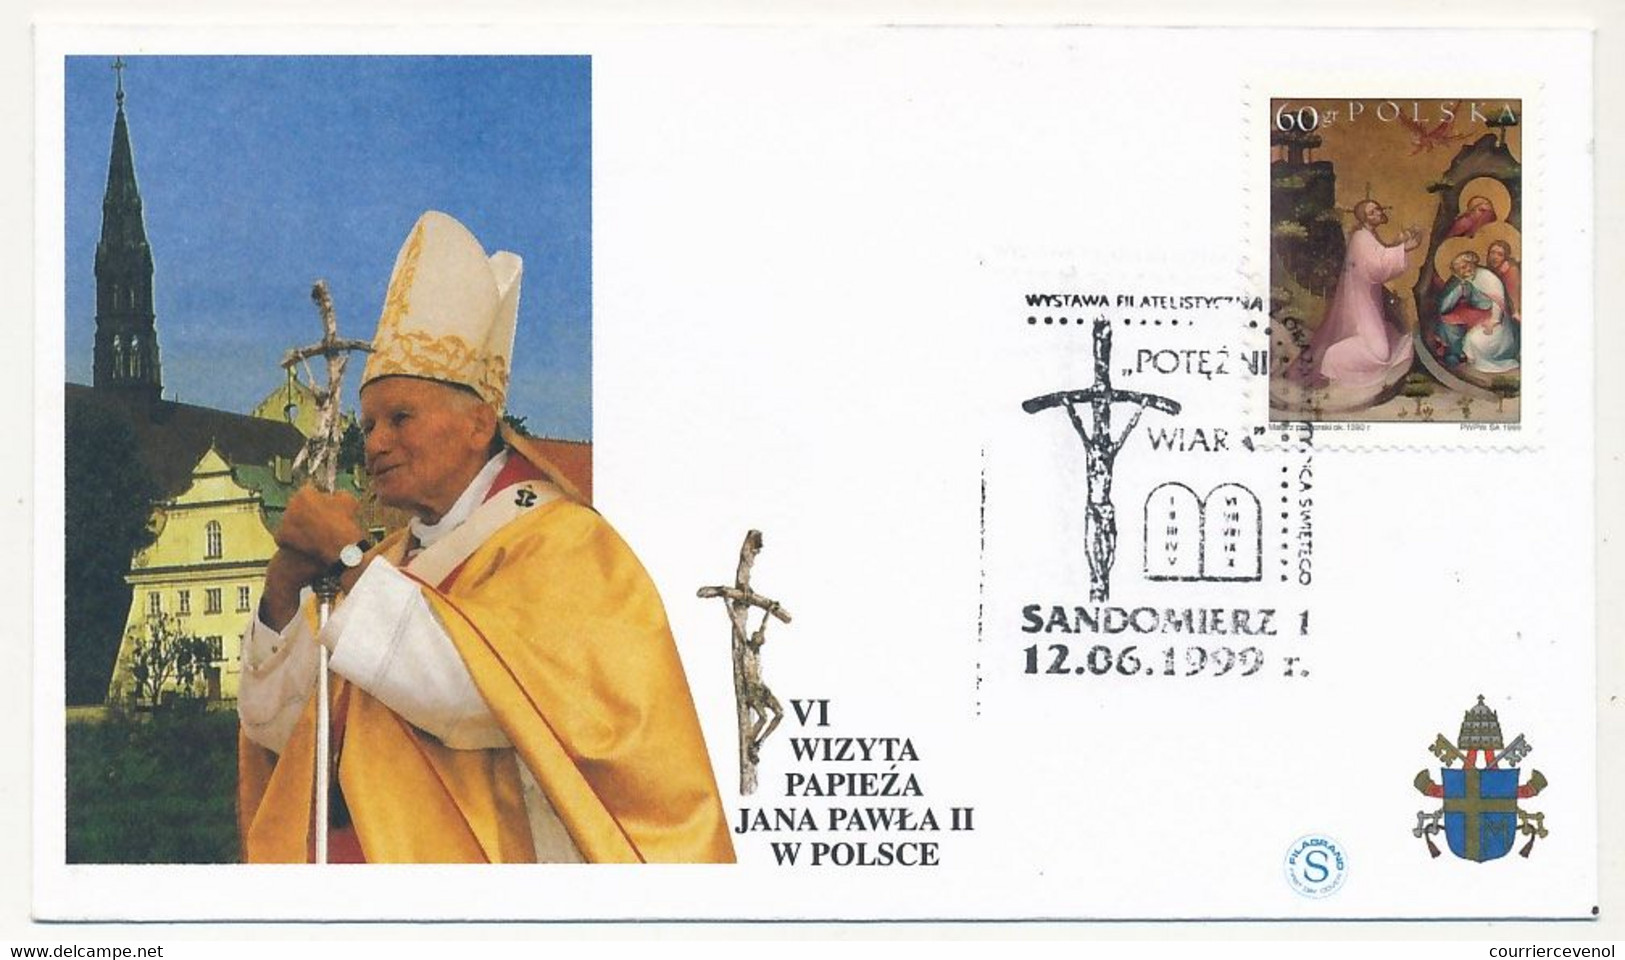 POLOGNE - 8 enveloppes illustrées - Voyage du Pape Jean Paul II en Pologne - Juin 1999